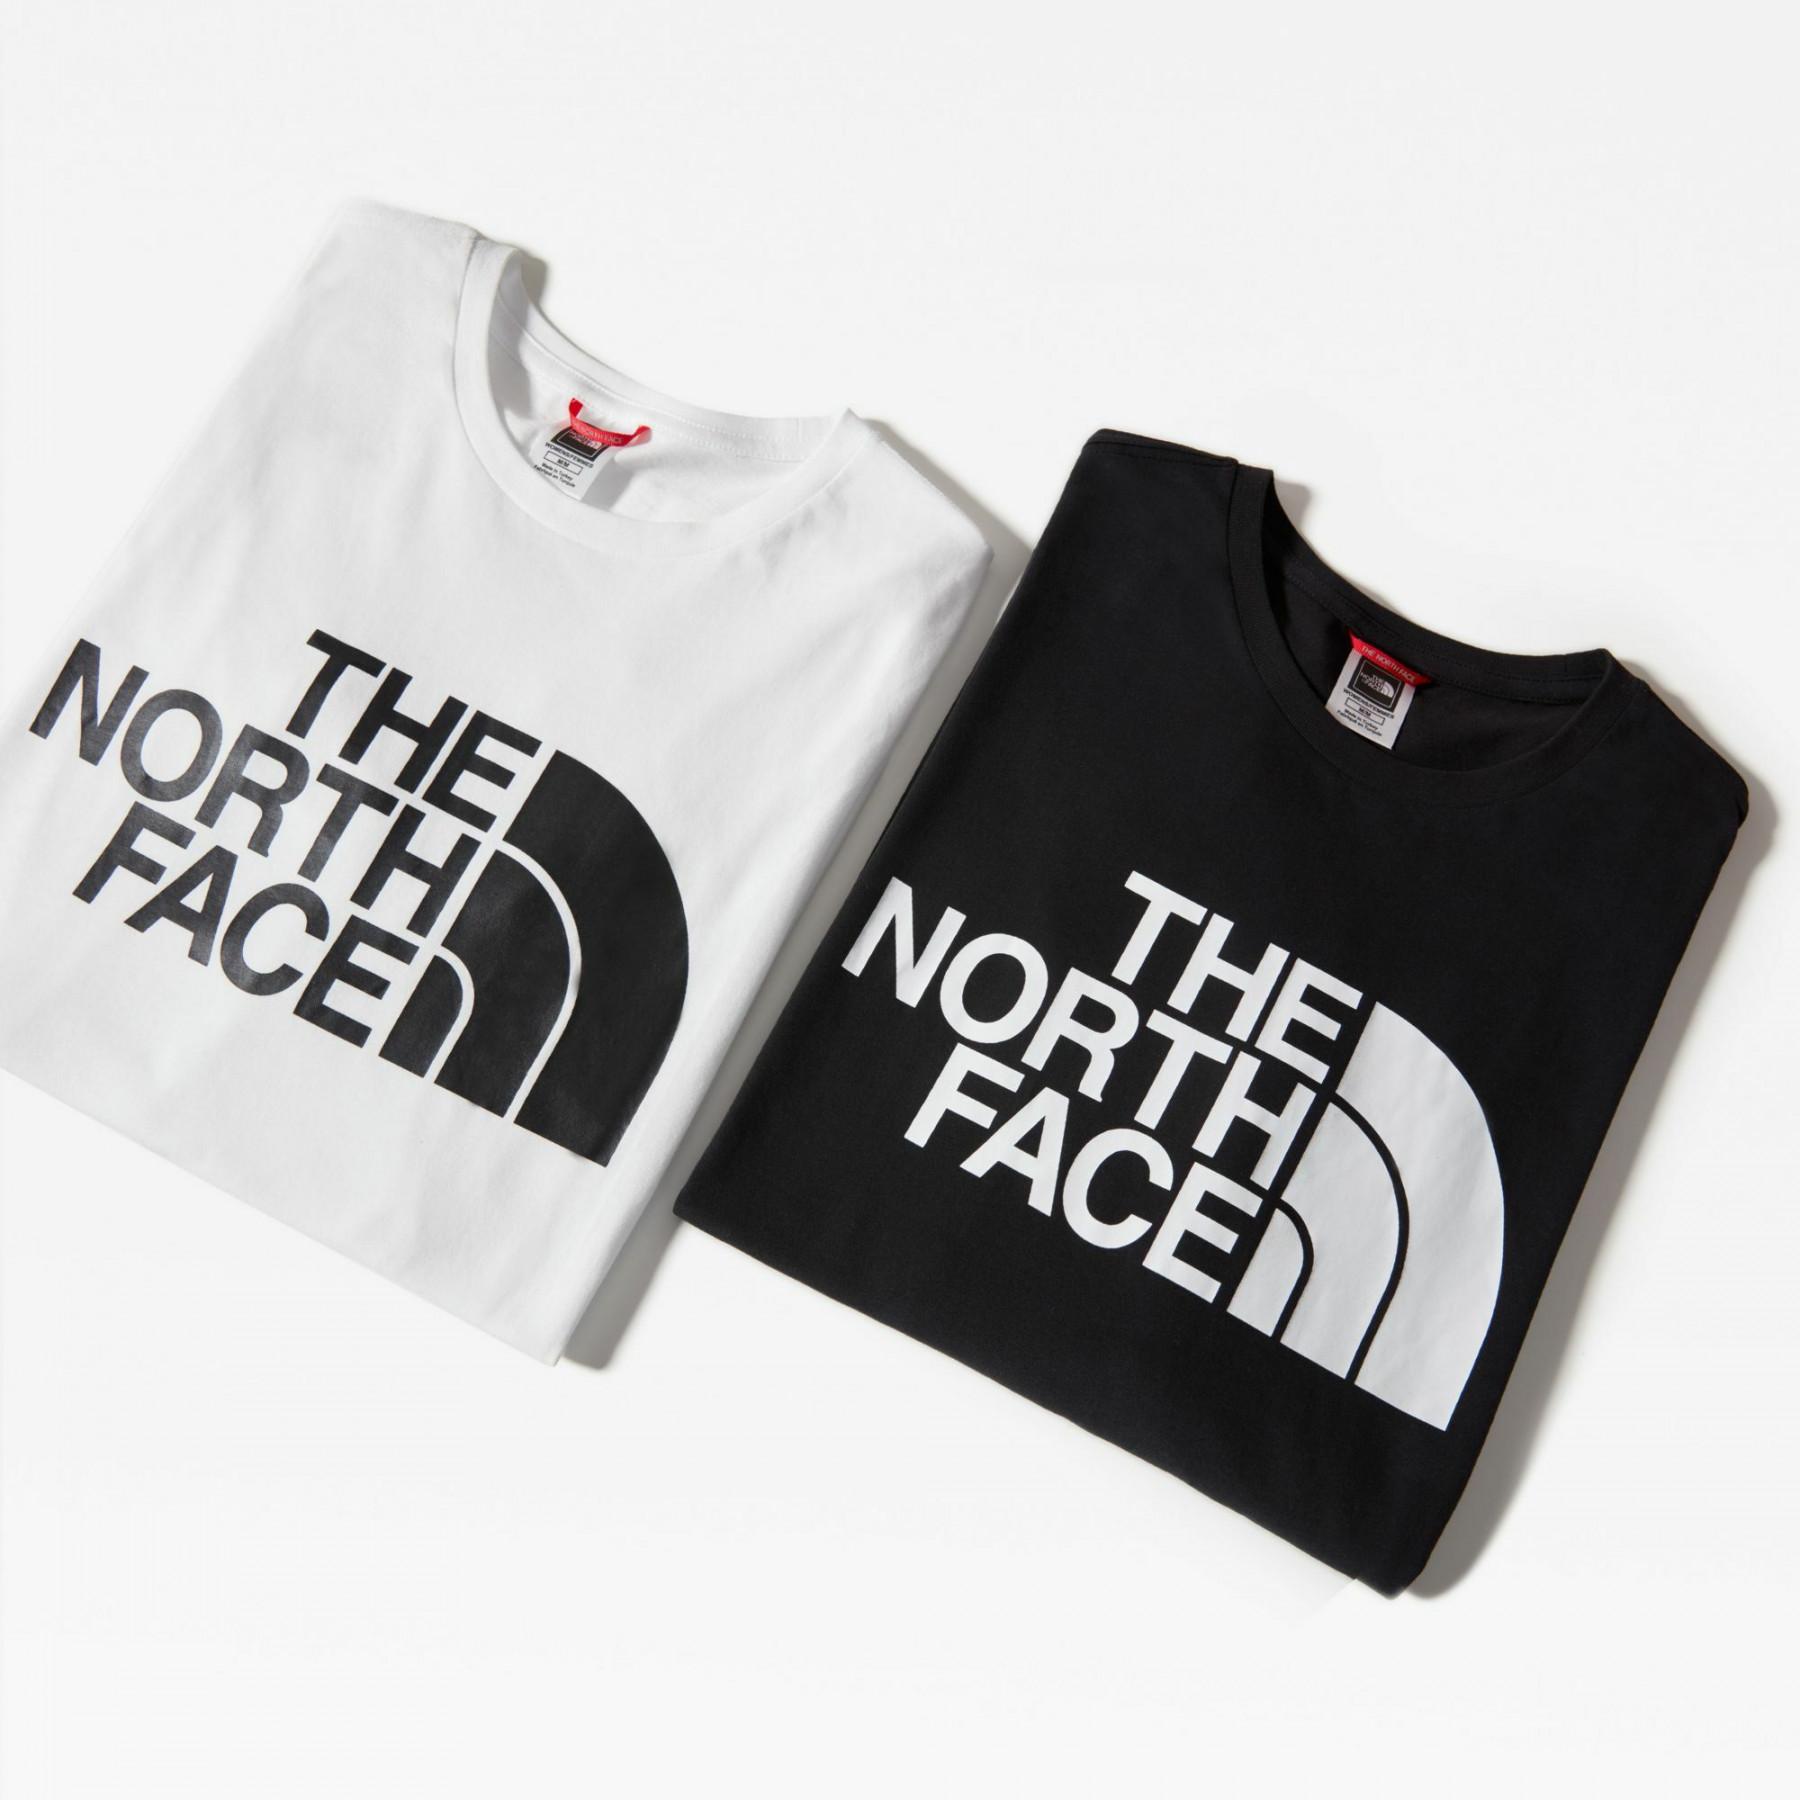 Langarm-T-Shirt für Frauen The North Face Classique